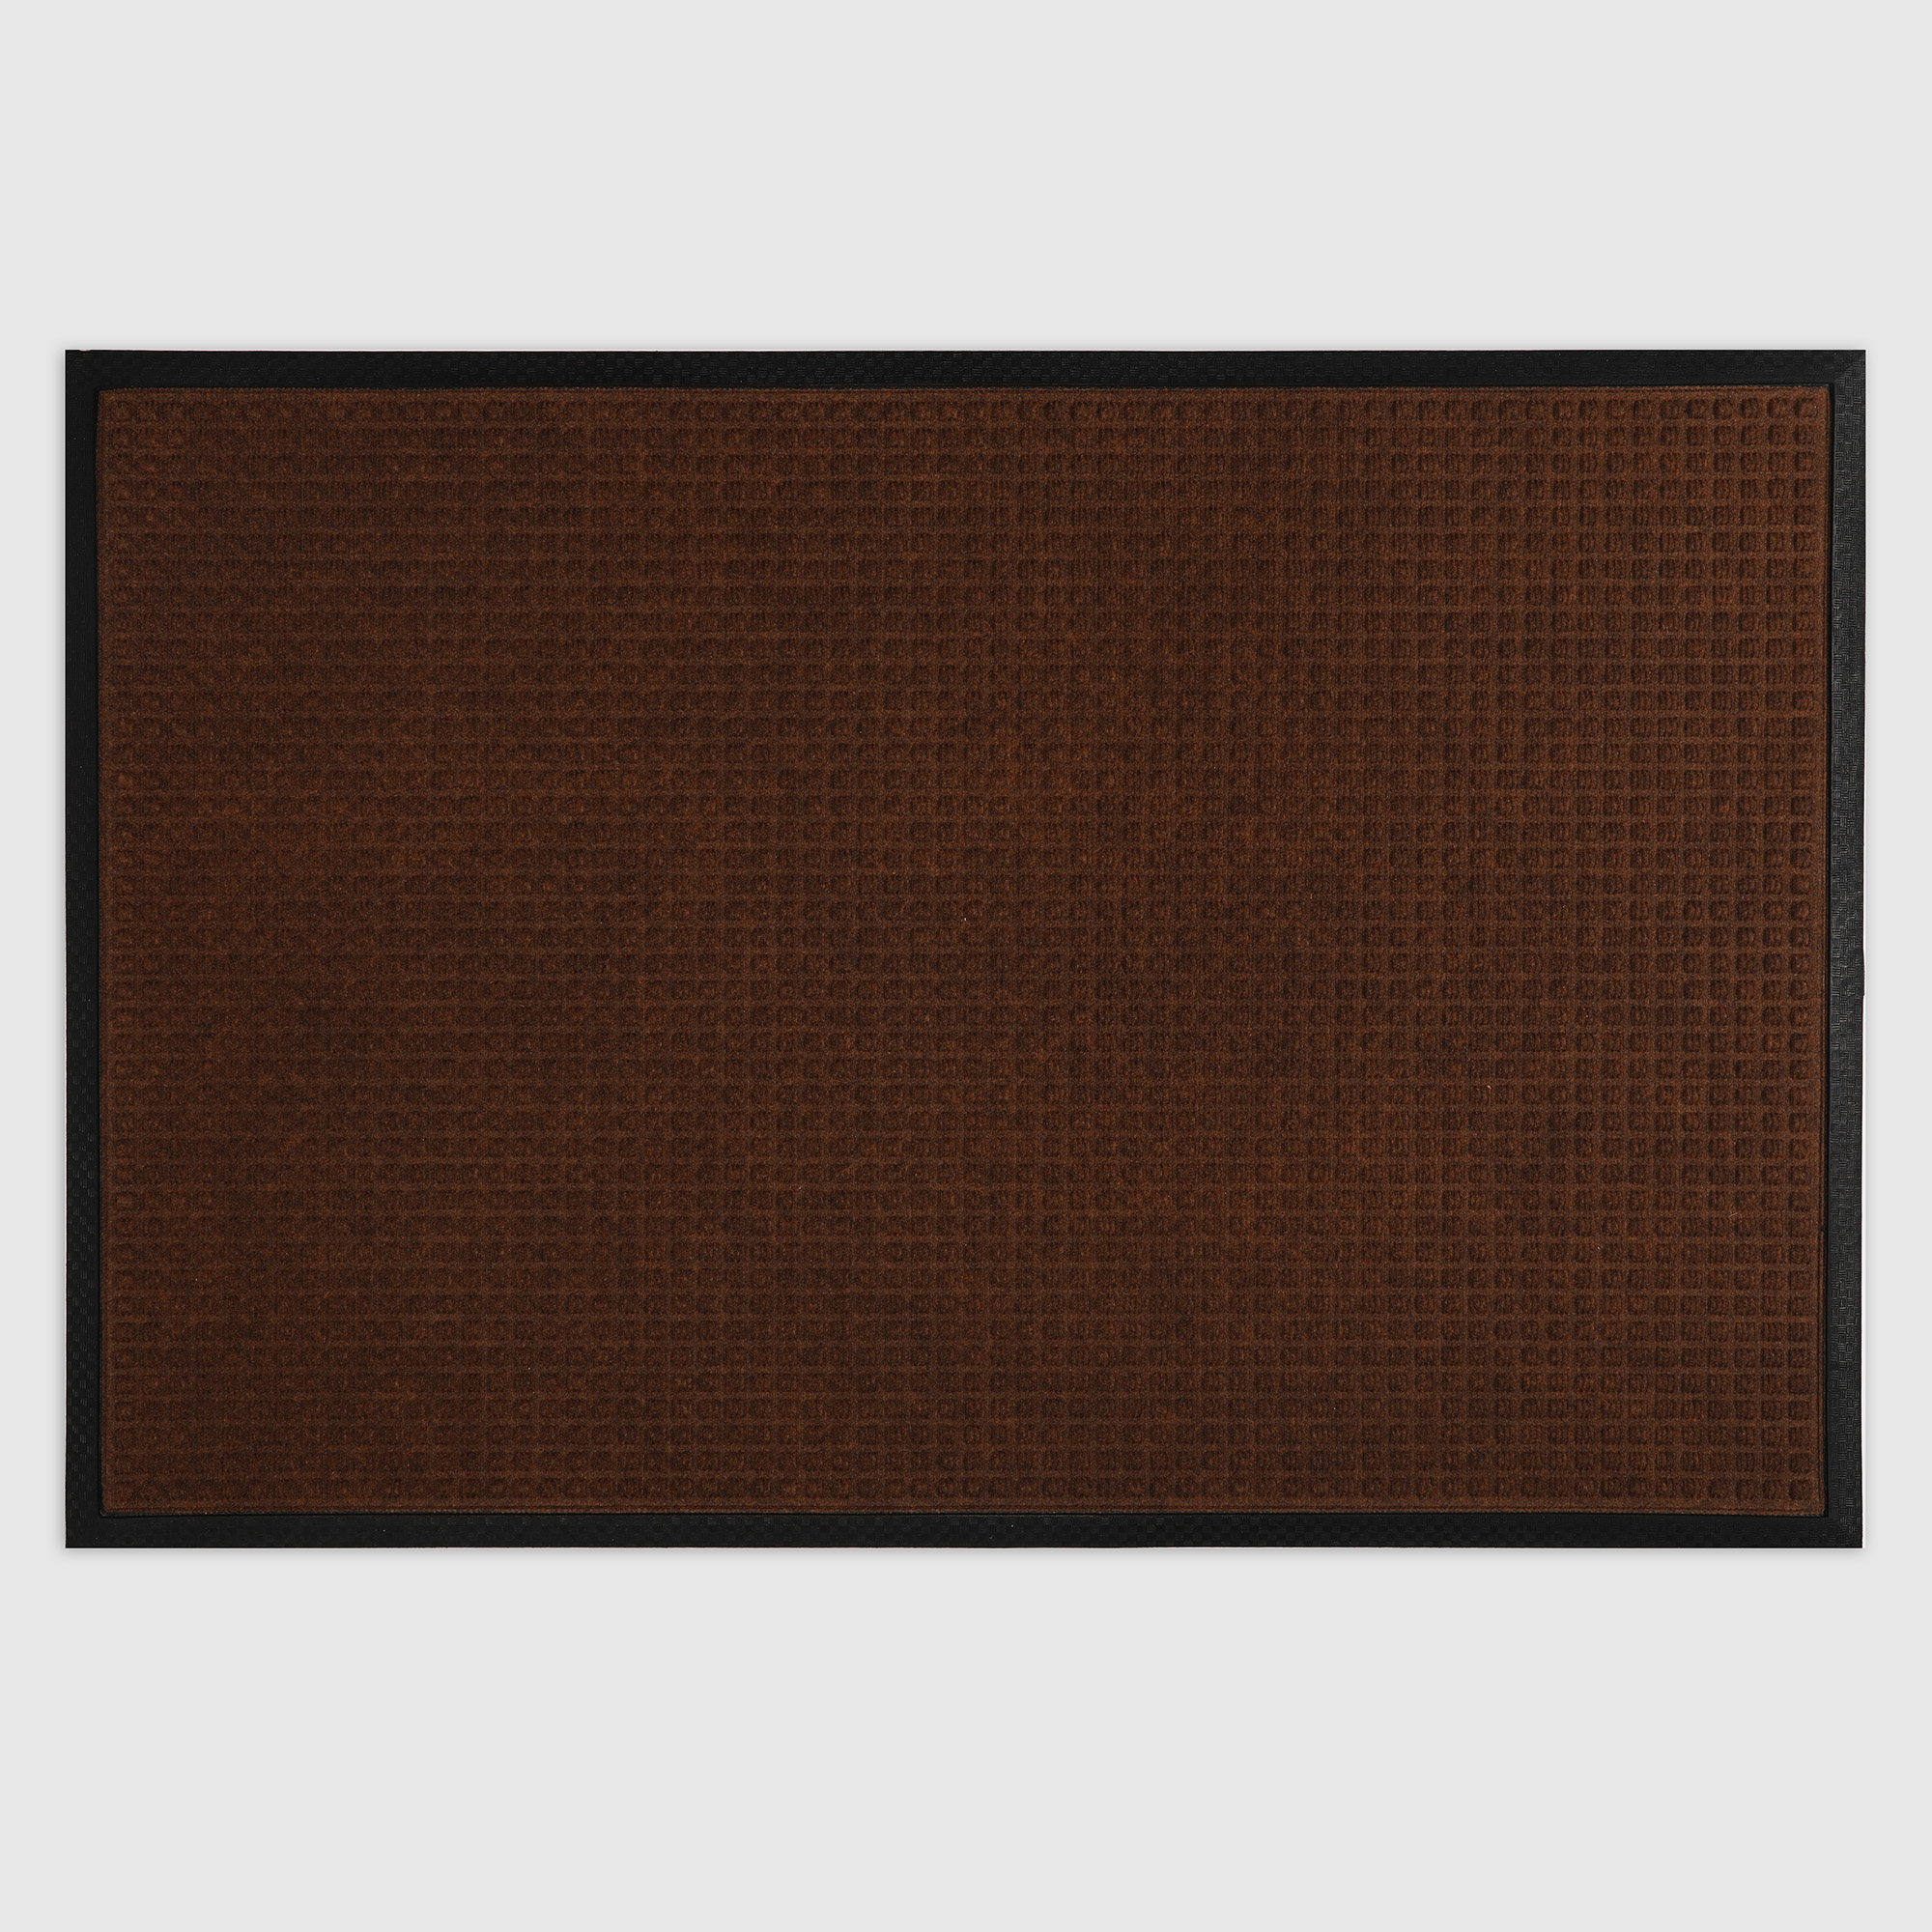 Коврик Jansons Balers коричневый 60х90 см - фото 1